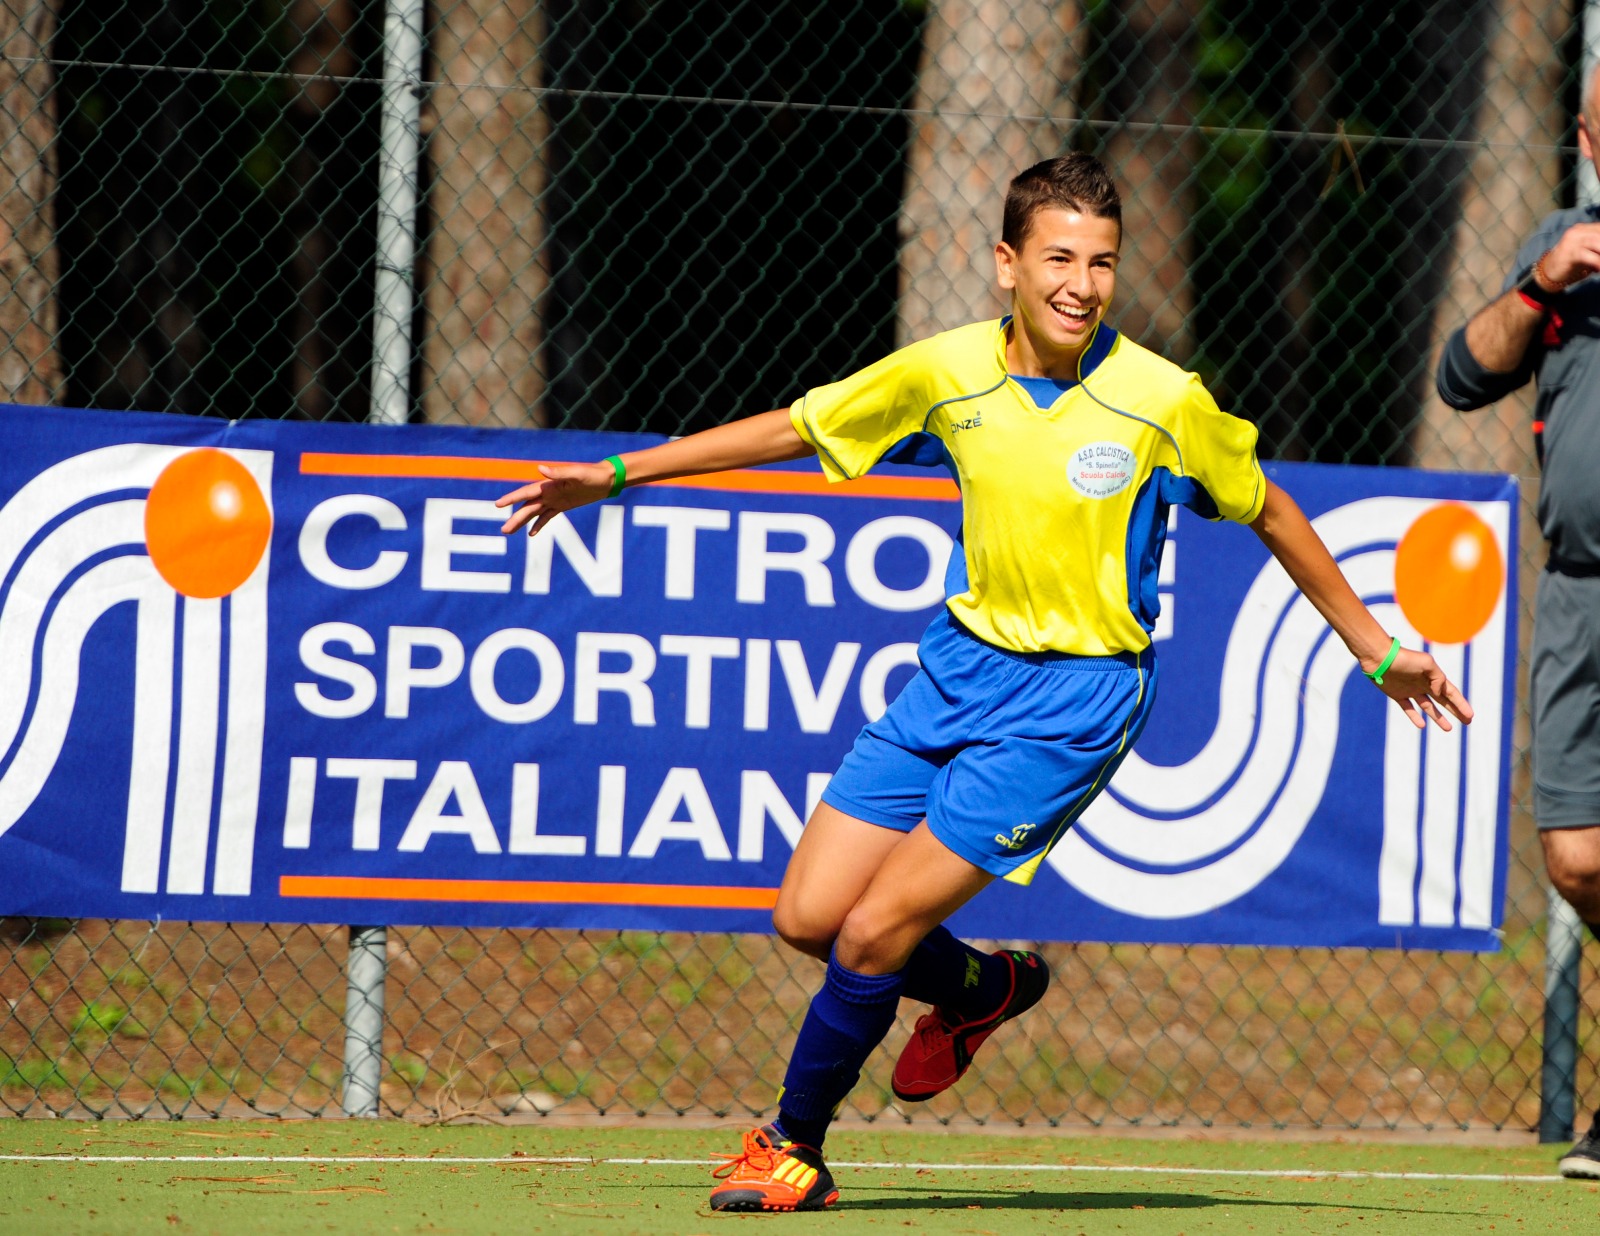 Un ragazzo che corre vestito da calcio, sullo sfondo un banner con scritto "Centro sportivo italiano"